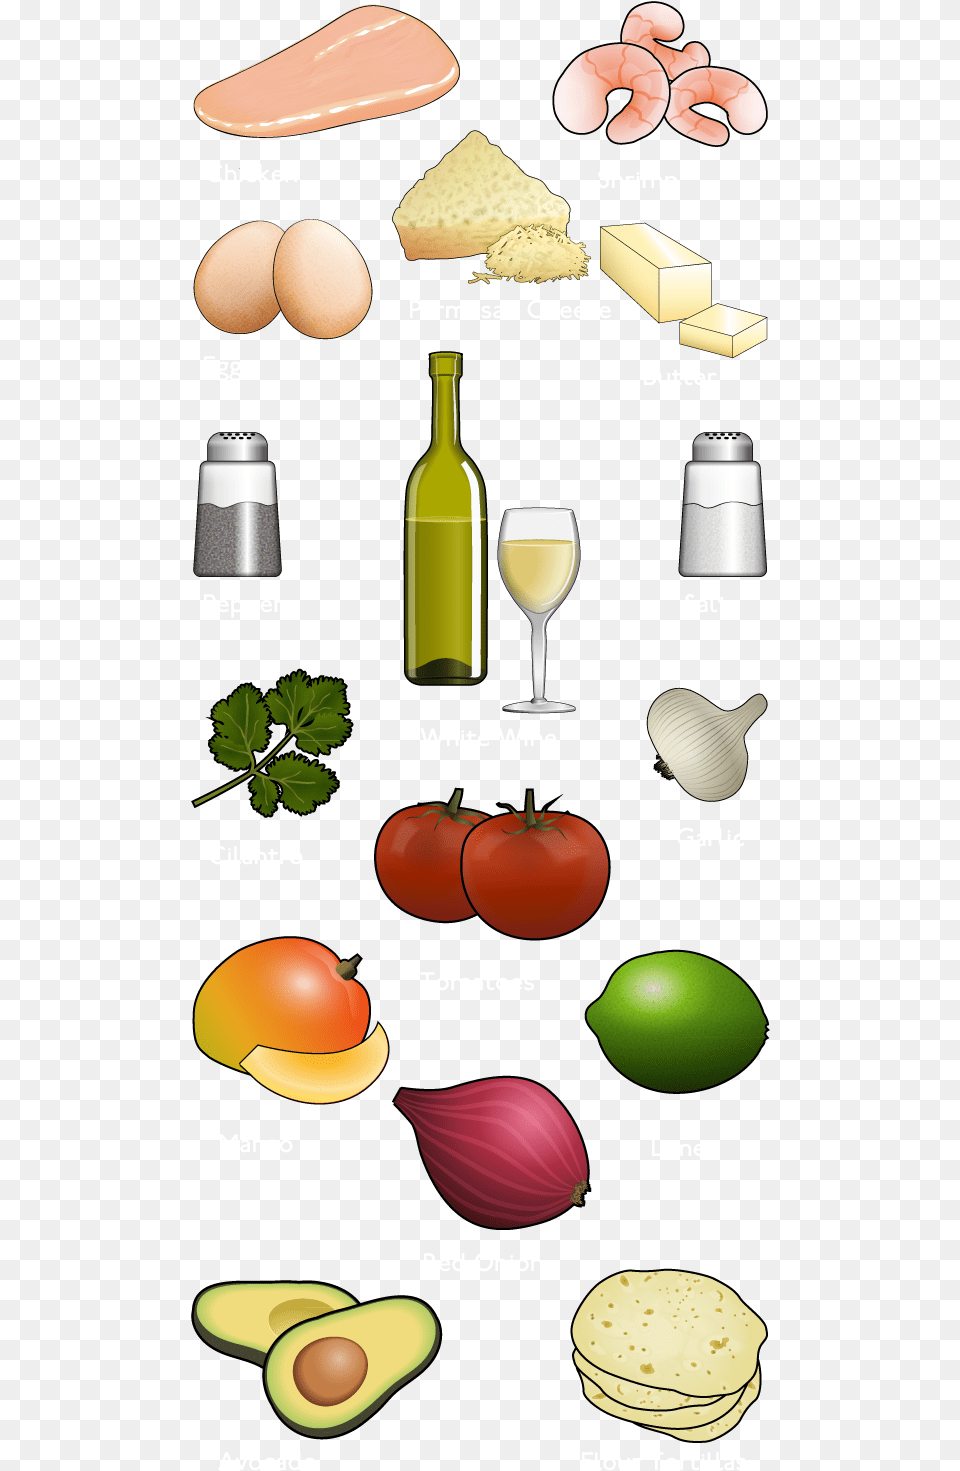 Vector Food Illustrations Illustration, Egg, Fruit, Plant, Produce Free Png Download